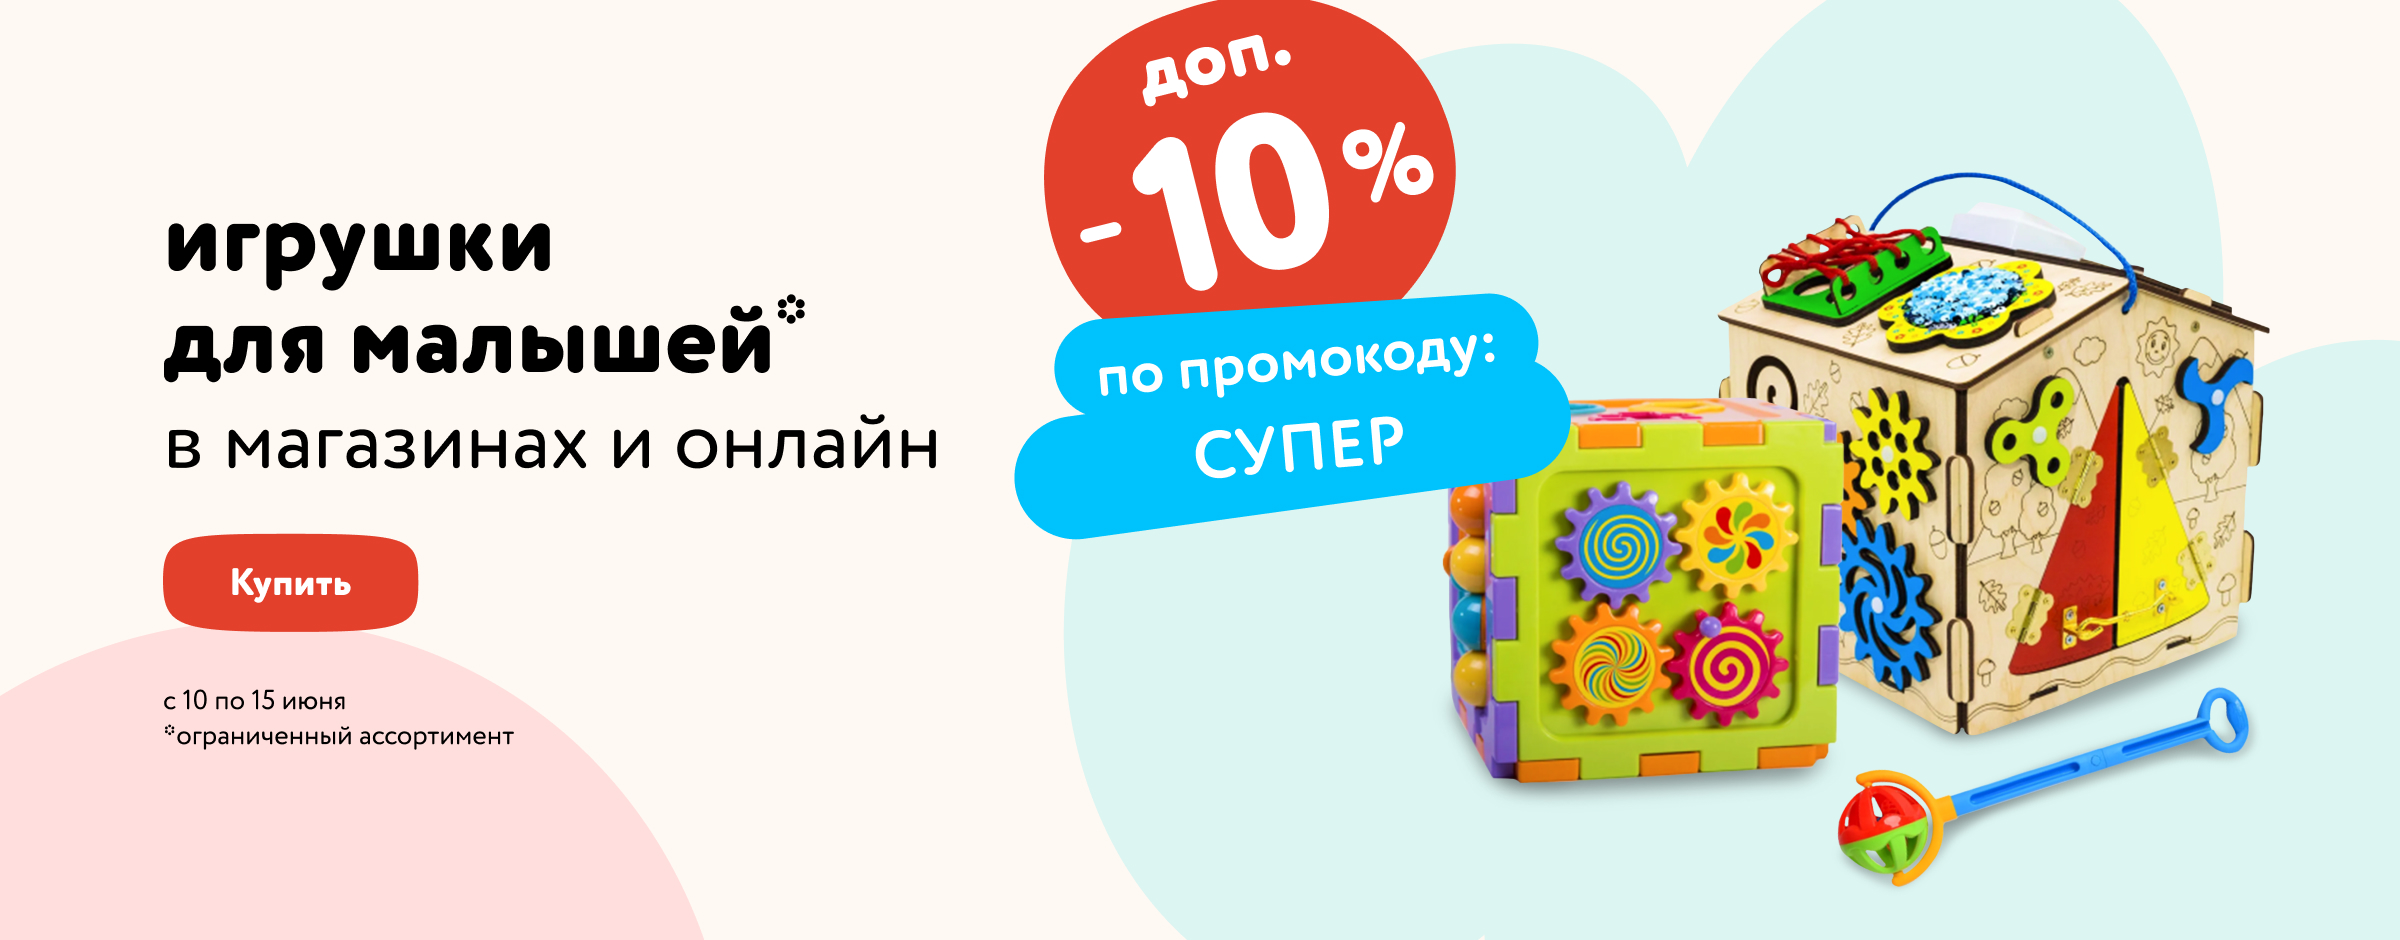 Доп. скидка 10% по промокоду на игрушки для малышей